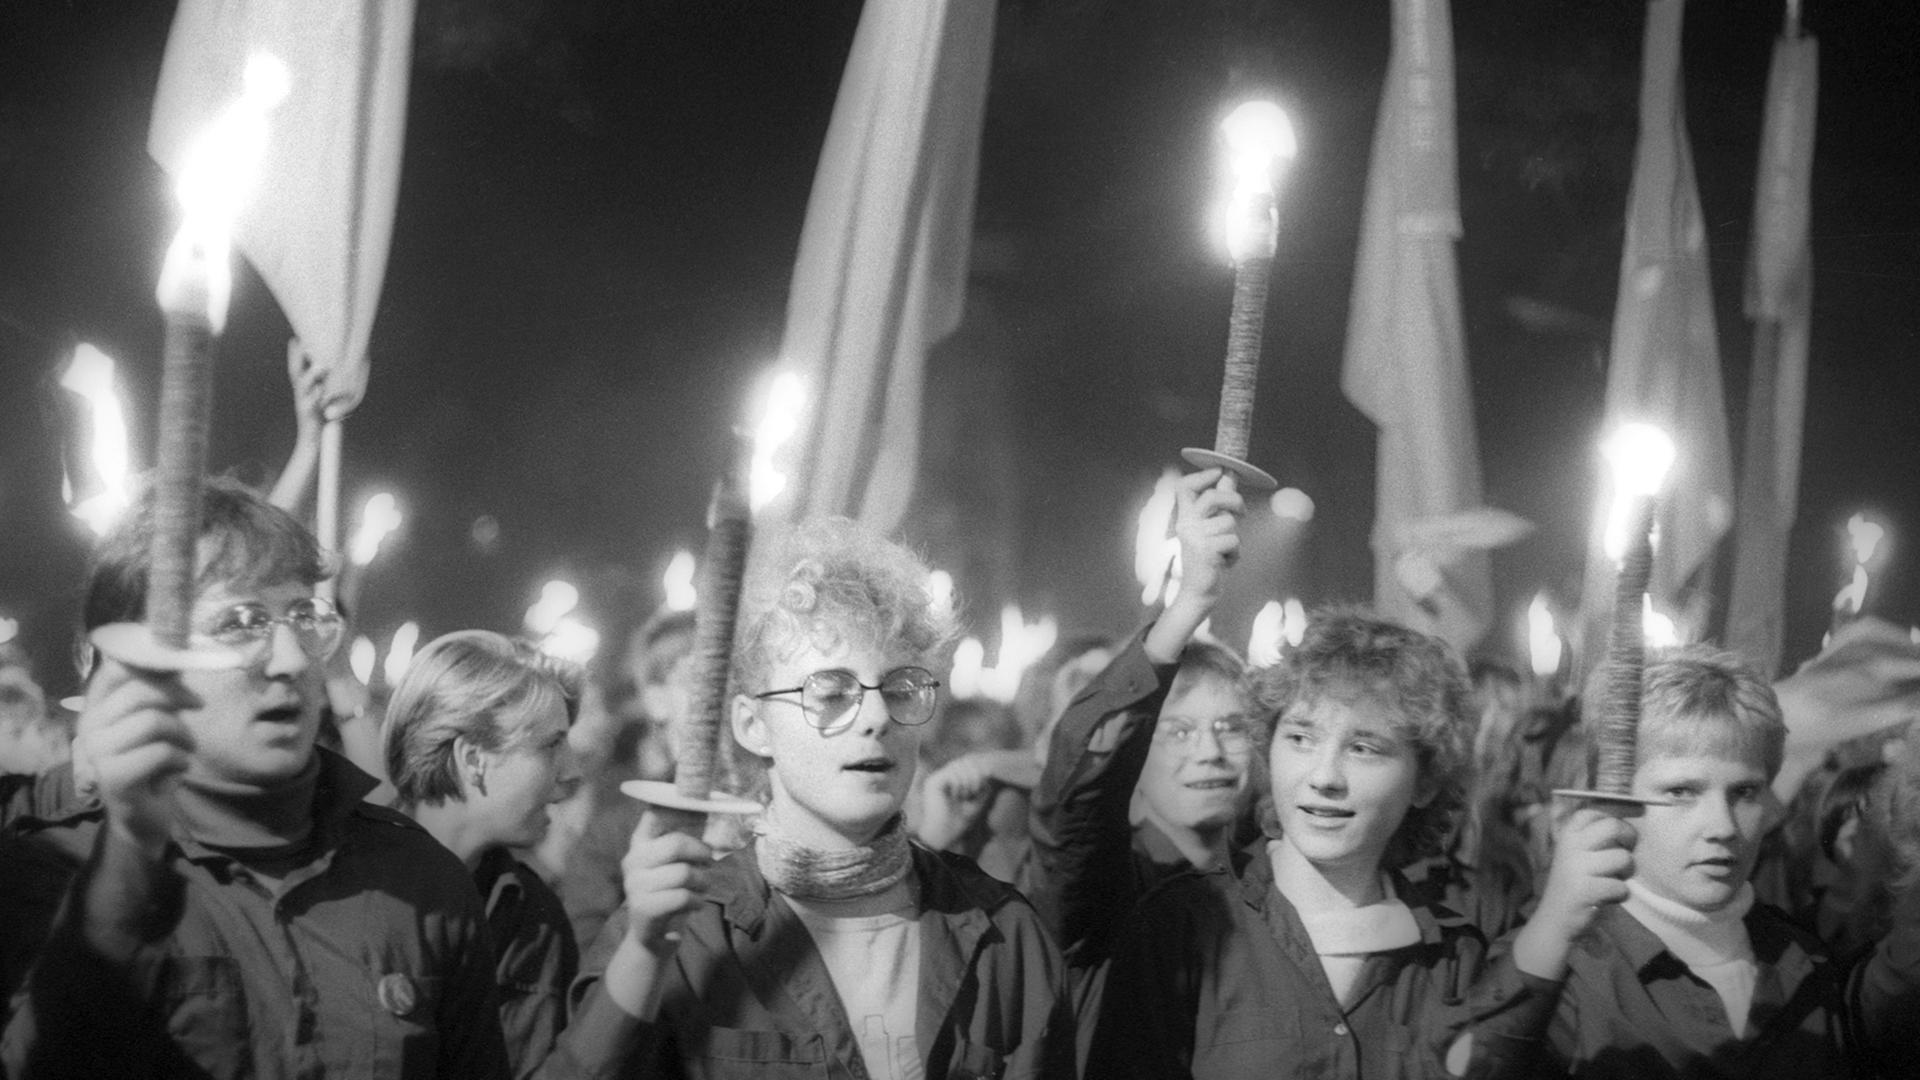 Fackelzug des DDR-Jugendverbandes FDJ (Freie Deutsche Jugend) am Vorabend des 40. Jahrestages der DDR in Berlin Unter den Linden, aufgenommen am 6. Oktober 1989.